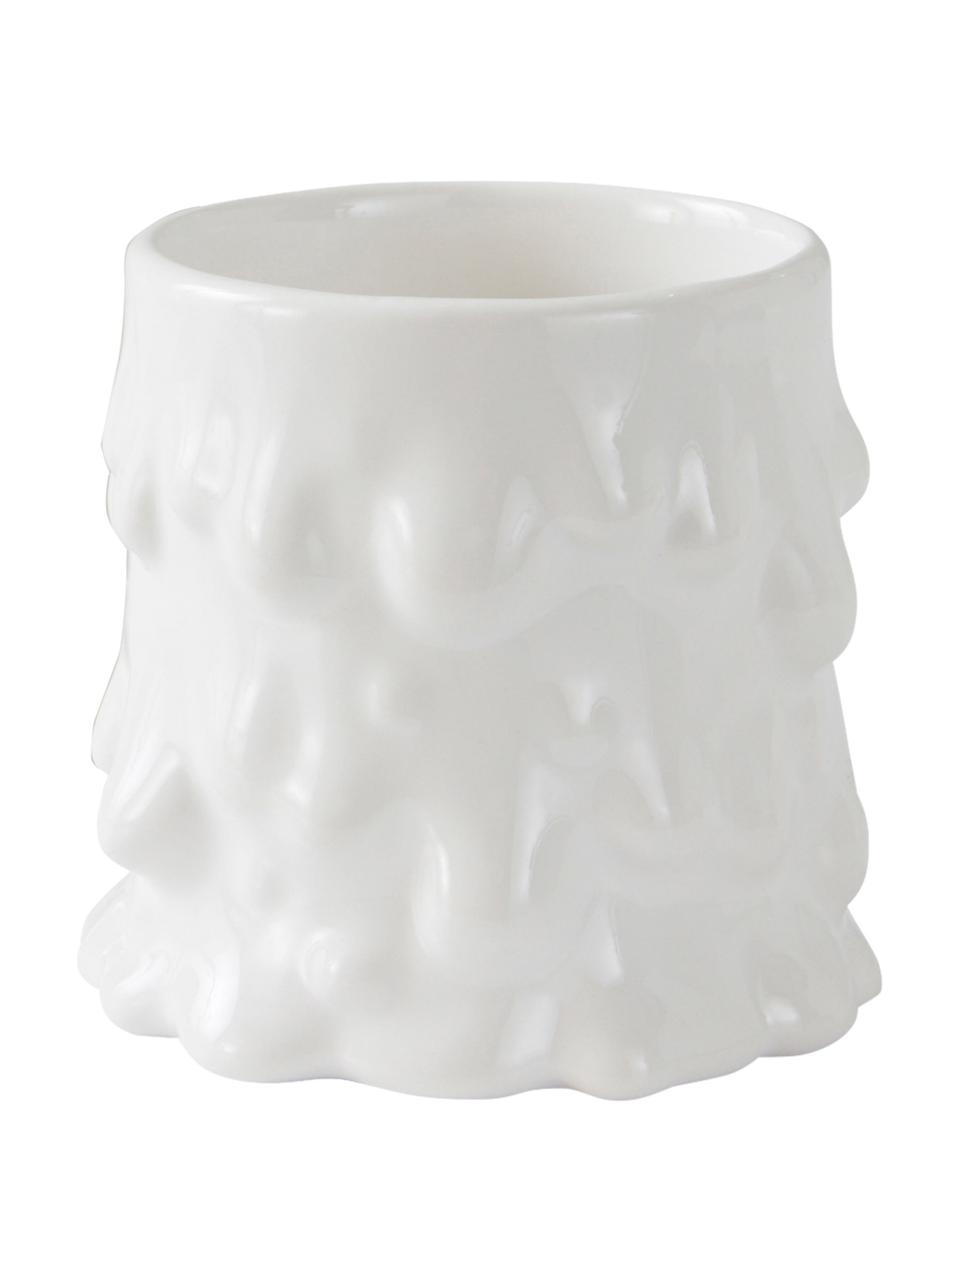 Hrnček v organickom tvare Lumi, 2 ks, Dolomitový porcelán, Biela, Ø 9 x V 8 cm, 230 ml